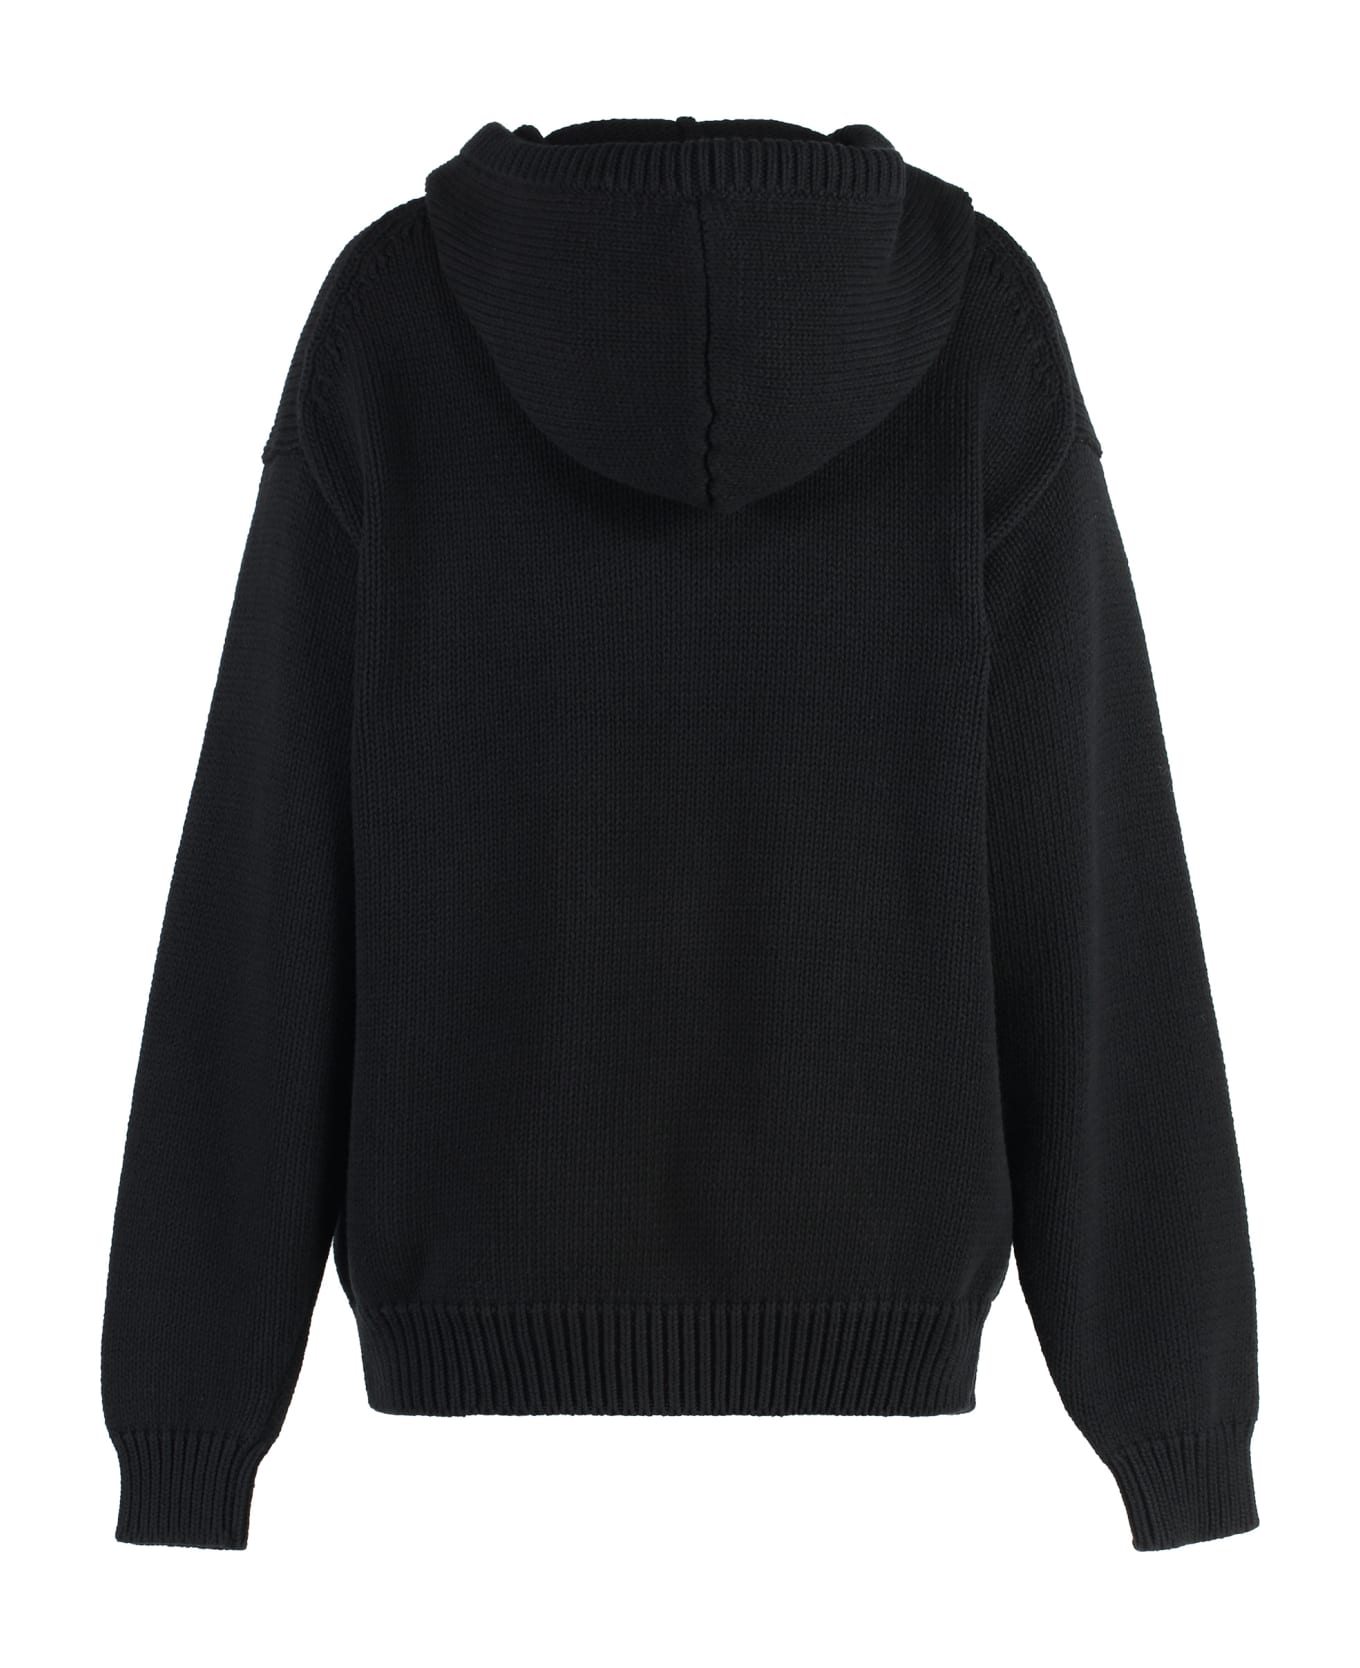 Kenzo Hooded Sweater - black フリース